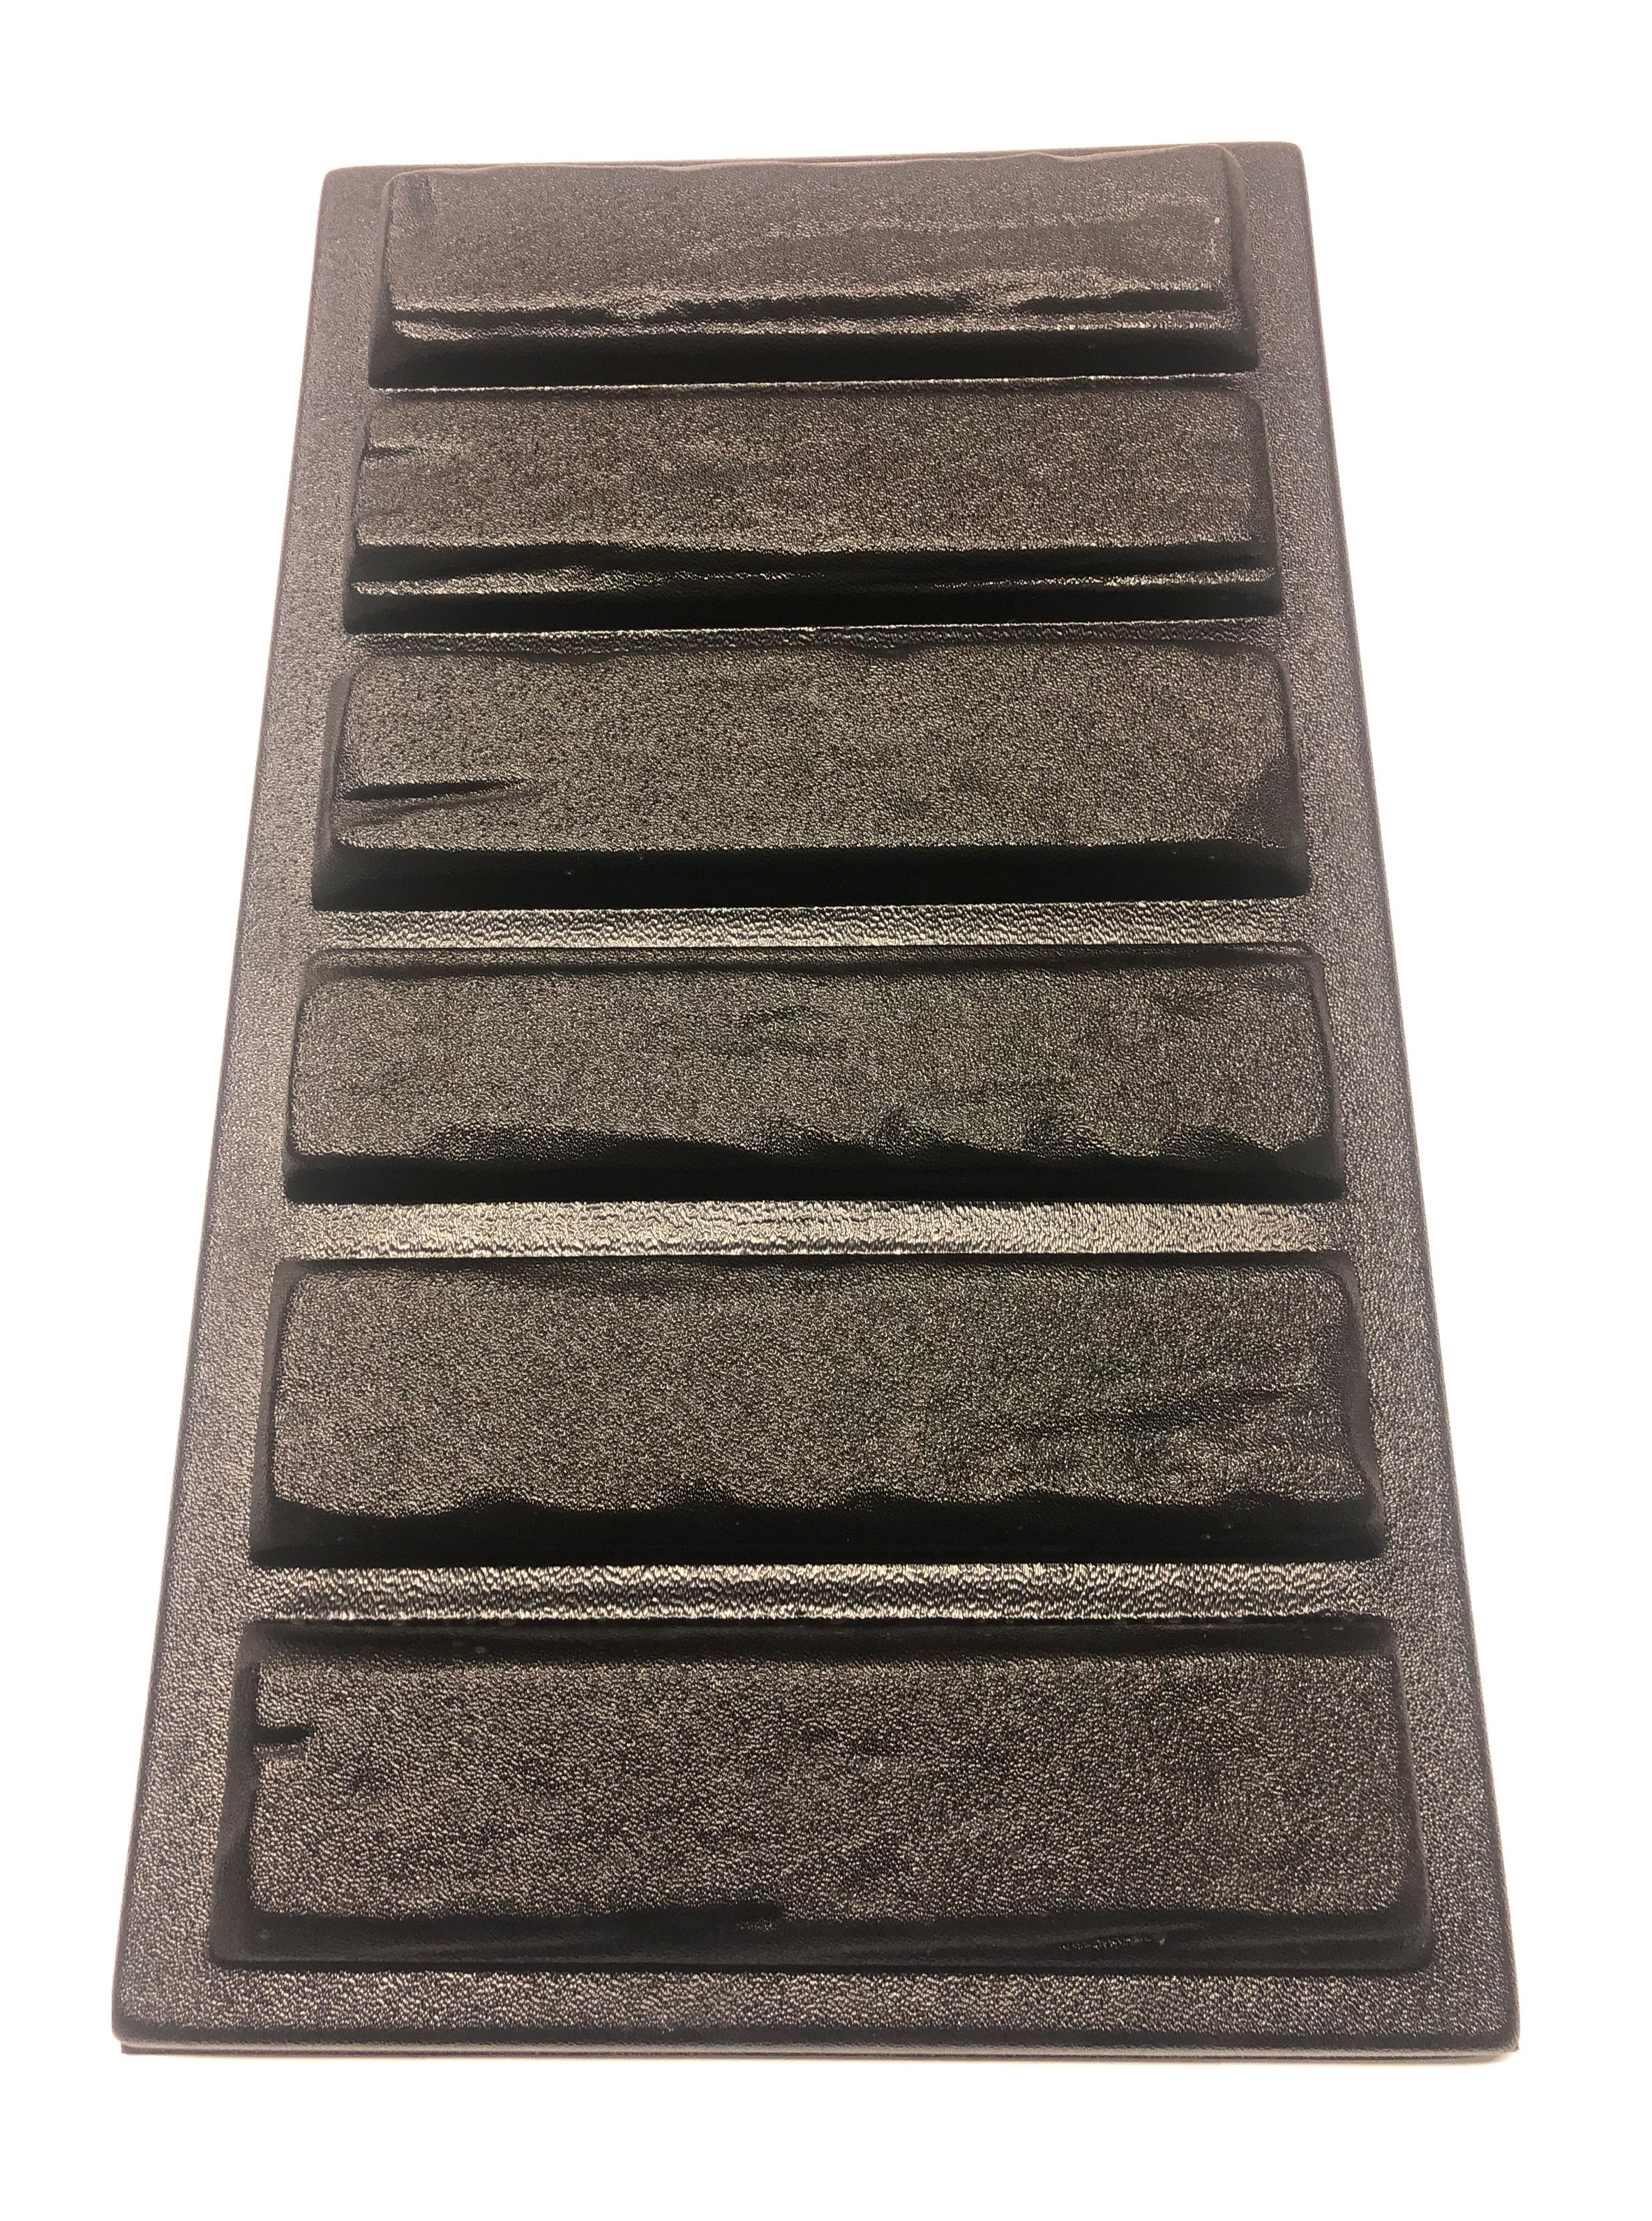 фото Форма для заливки гипсом и бетоном, декоративный камень, альфа 23, wooden tiles liga form